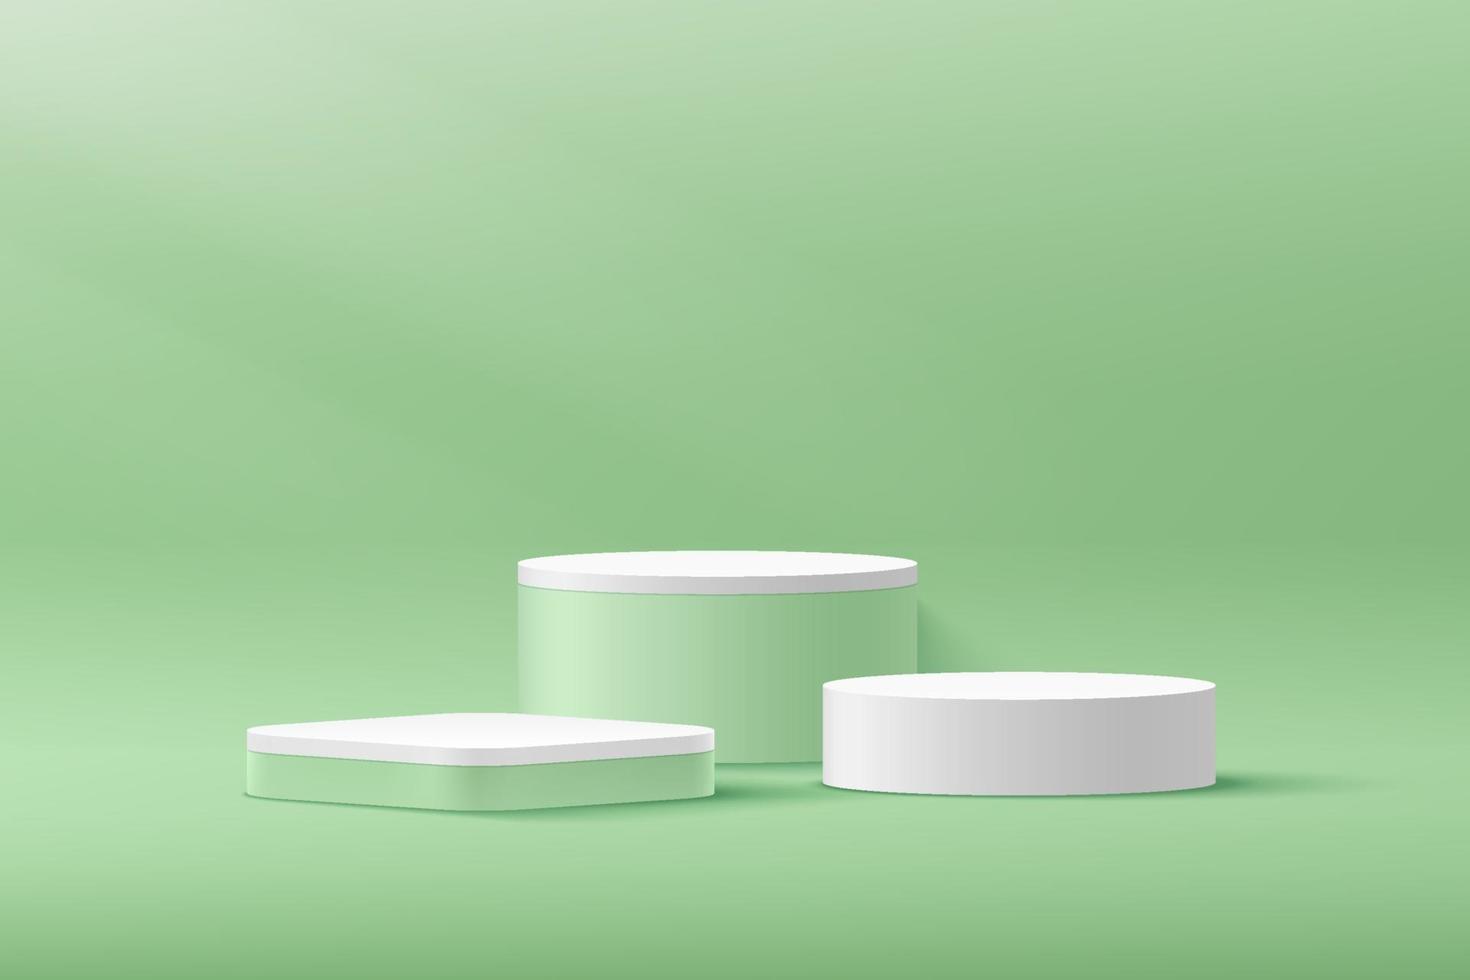 cilindro branco moderno, pódio de pedestal de cubo verde, sala vazia verde clara com sombra de janela. vetor abstrato renderização de forma 3d, apresentação de exibição de produtos cosméticos. cena mínima do quarto pastel.